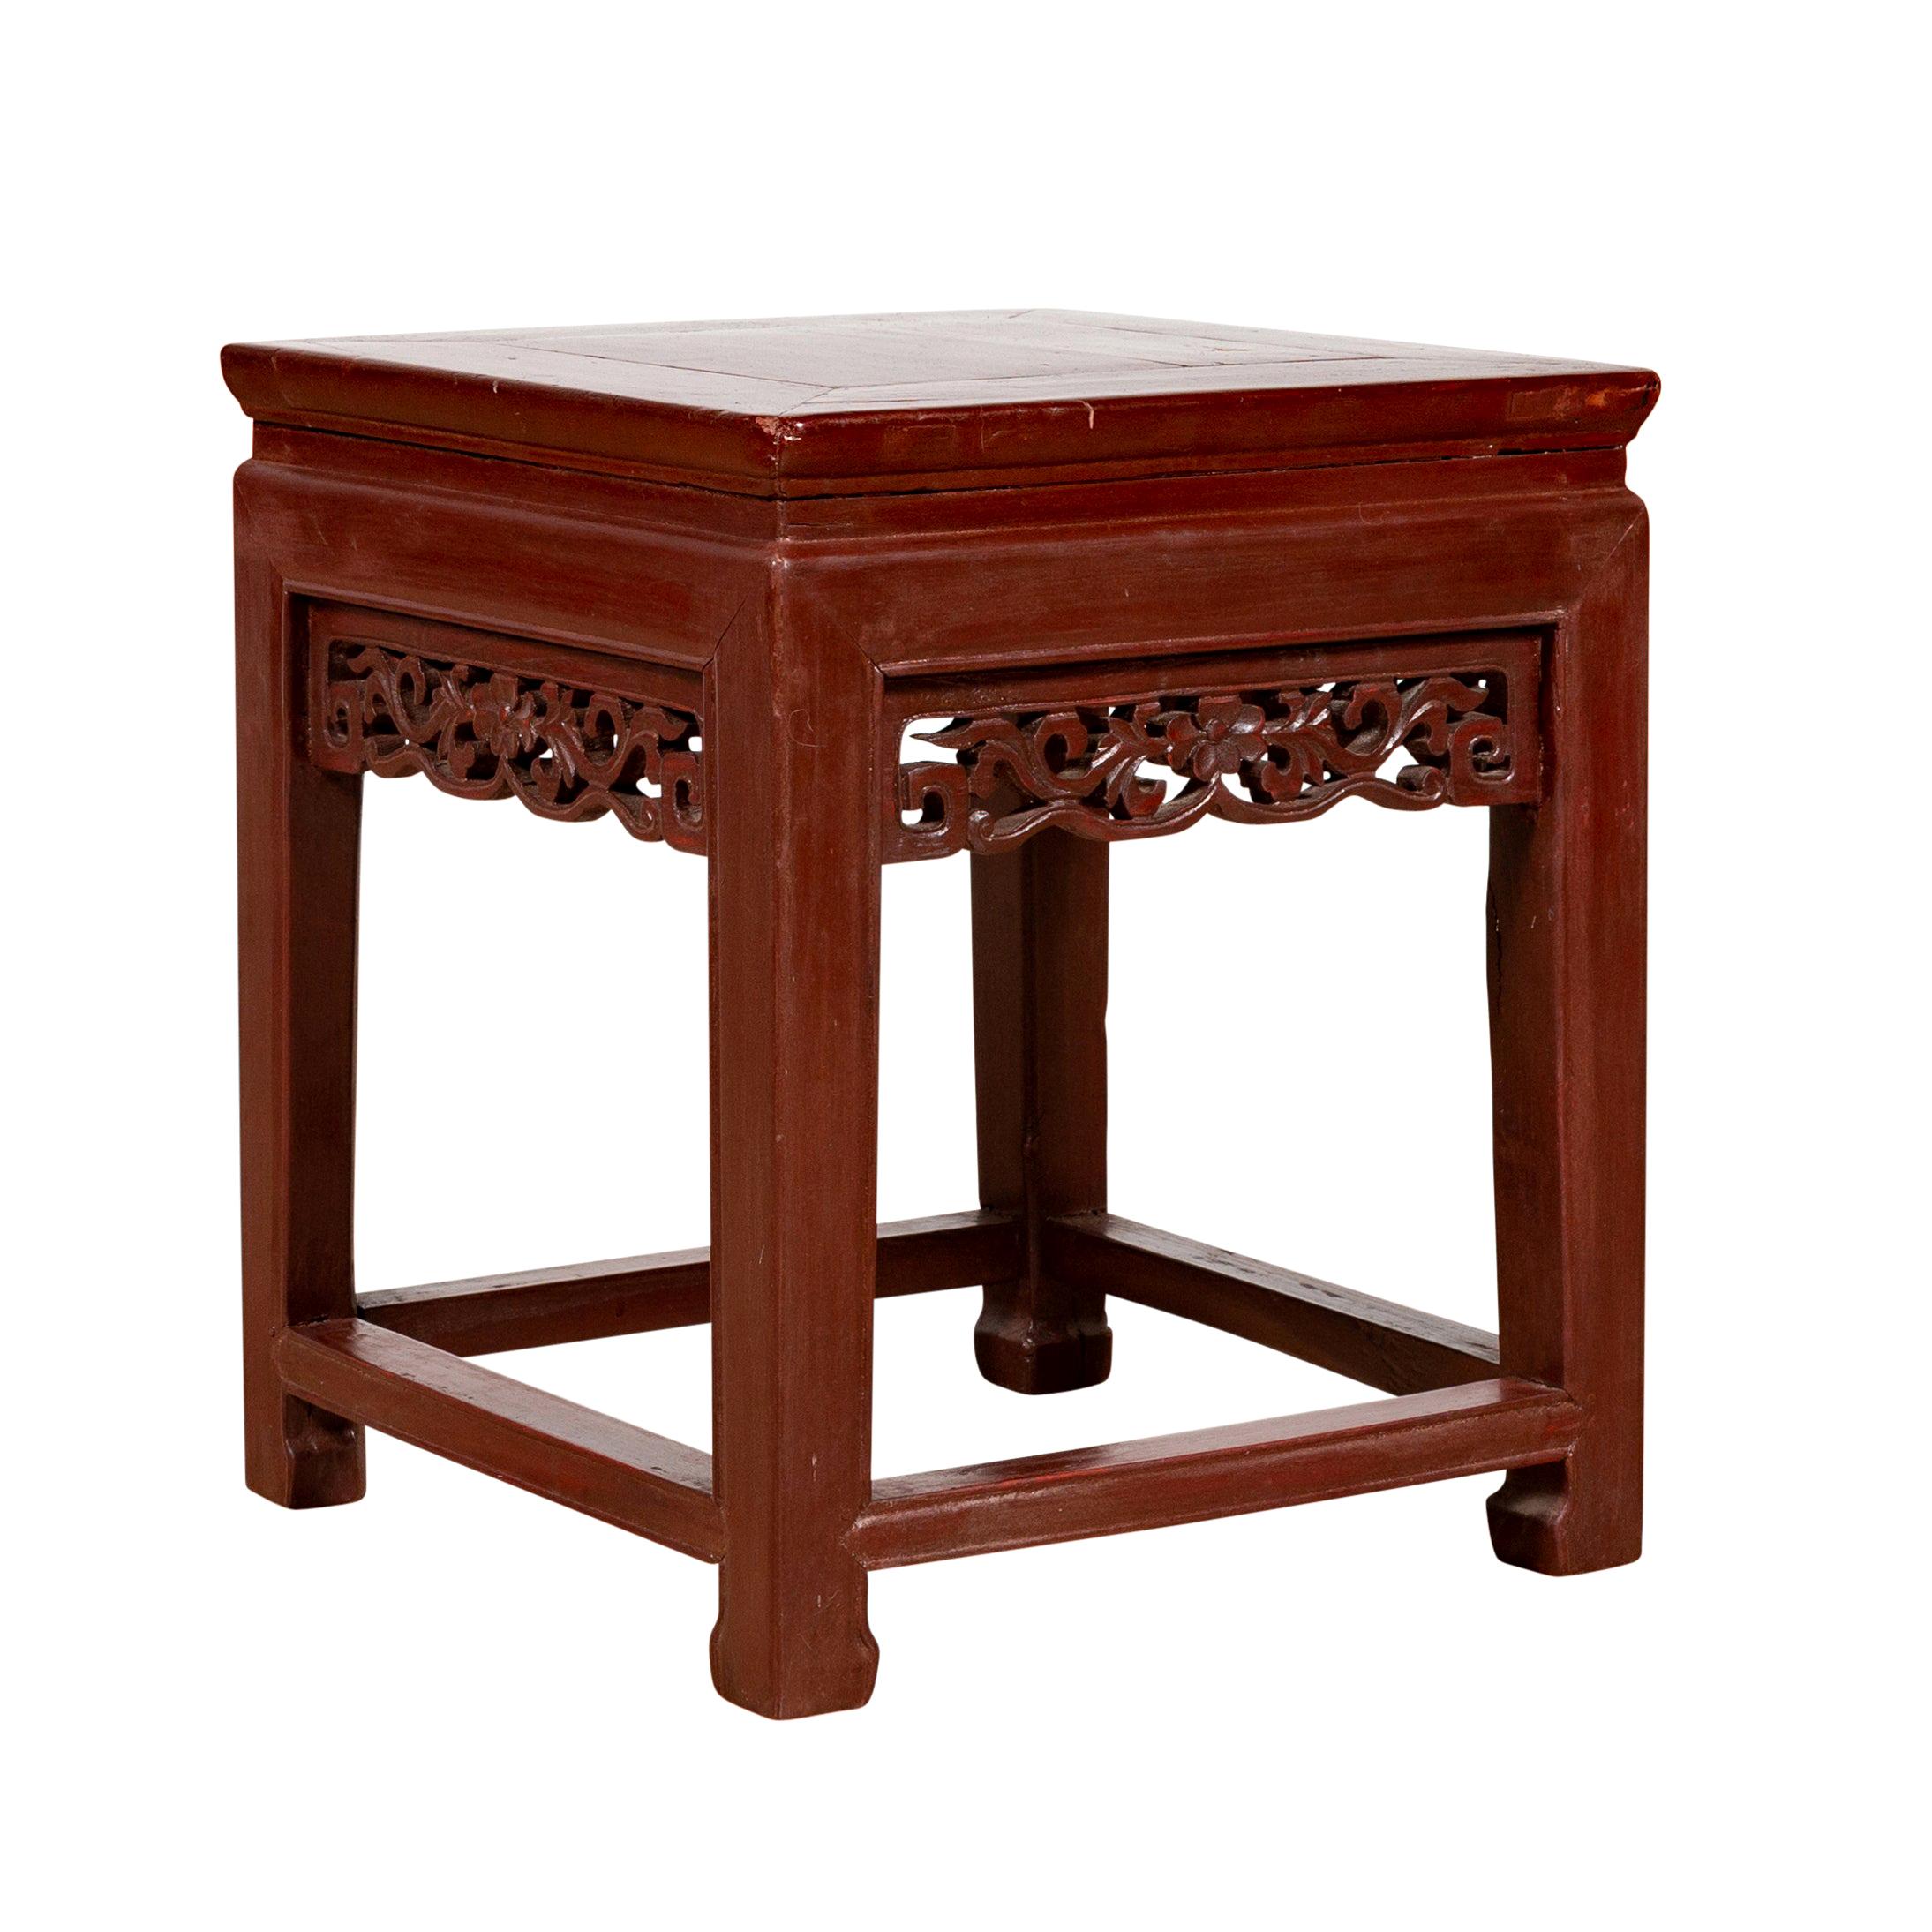 Table d'appoint chinoise vintage avec patine rouge foncé et tablier sculpté à la main et feuillage